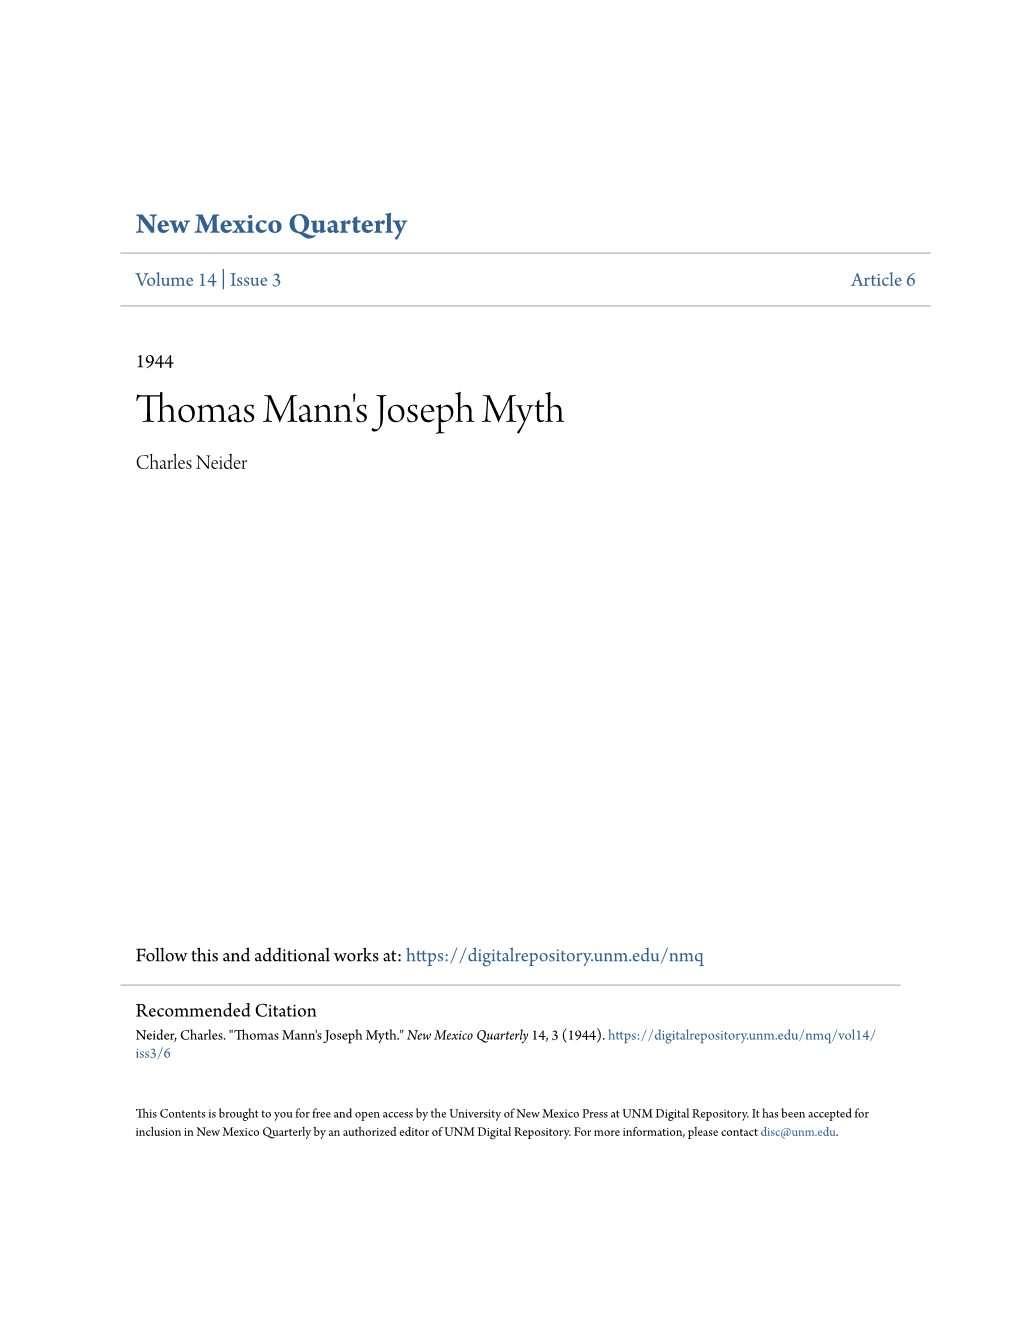 Thomas Mann's Joseph Myth Charles Neider